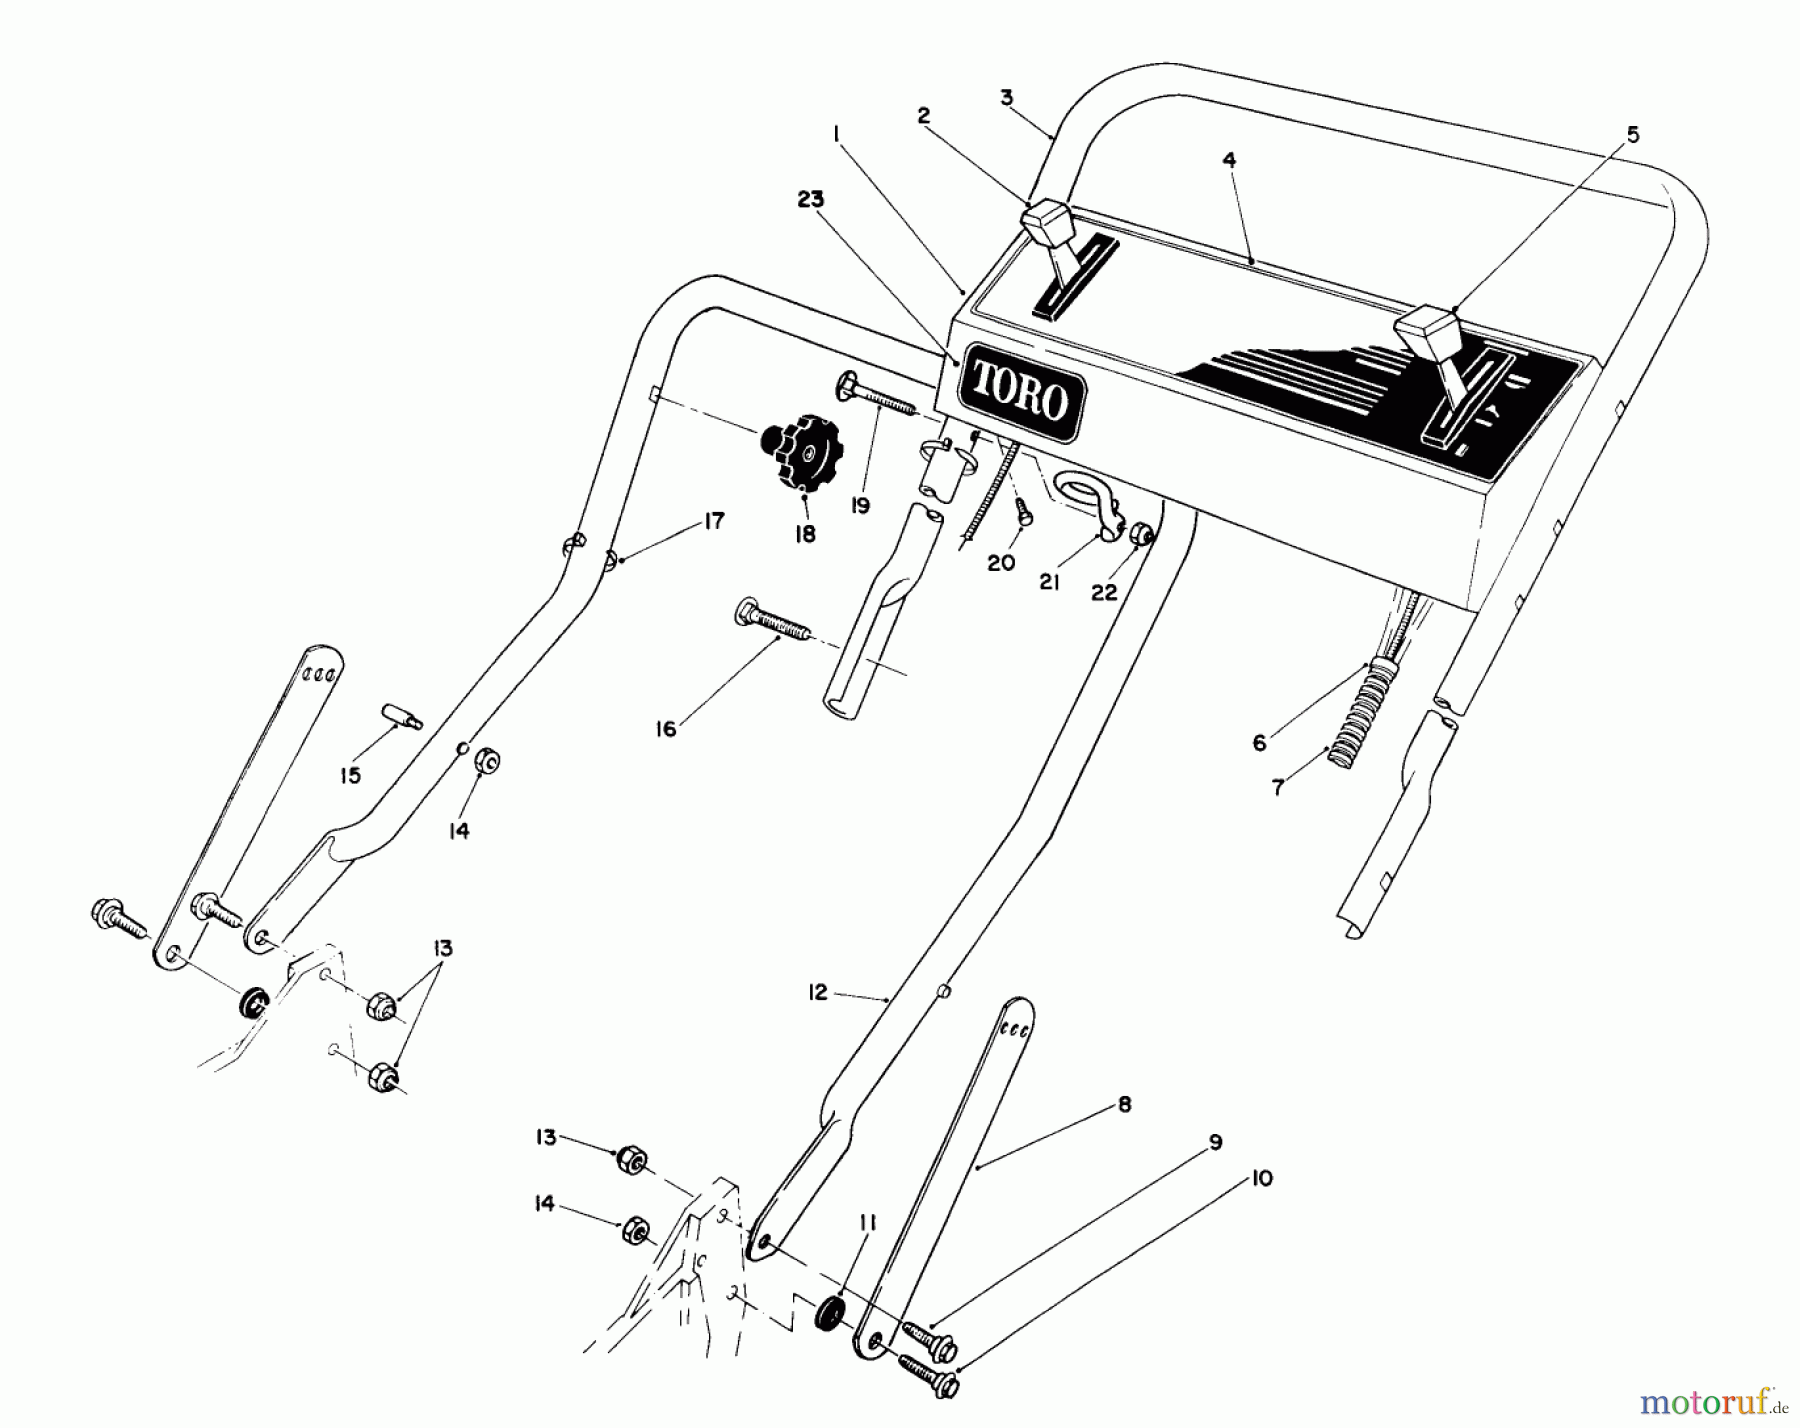  Toro Neu Mowers, Walk-Behind Seite 1 20668 - Toro Lawnmower, 1991 (1000001-1999999) HANDLE ASSEMBLY